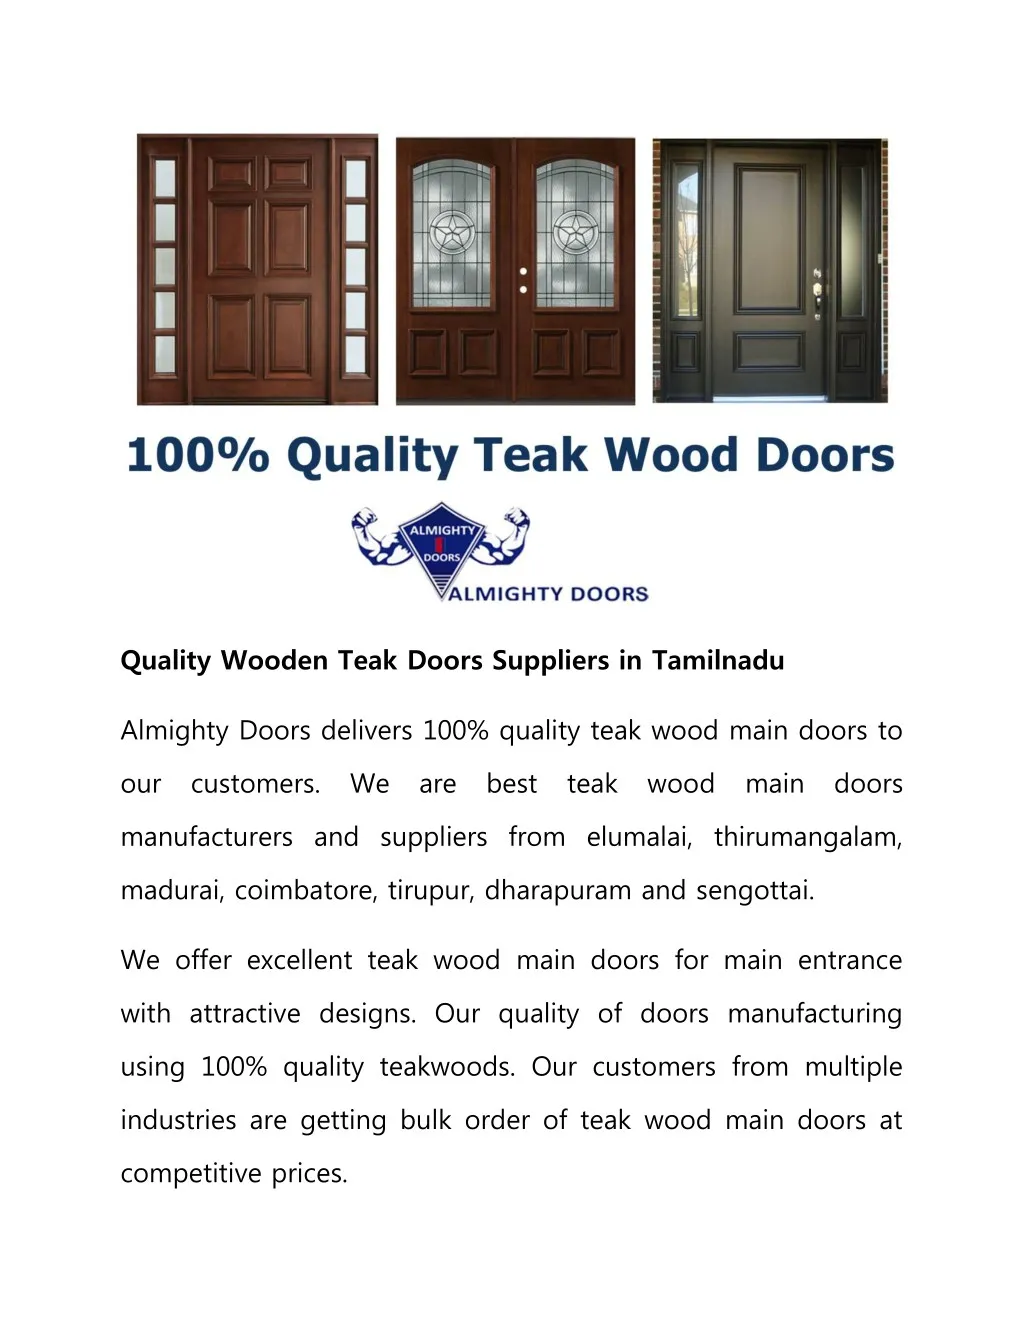 quality wooden teak doors suppliers in tamilnadu